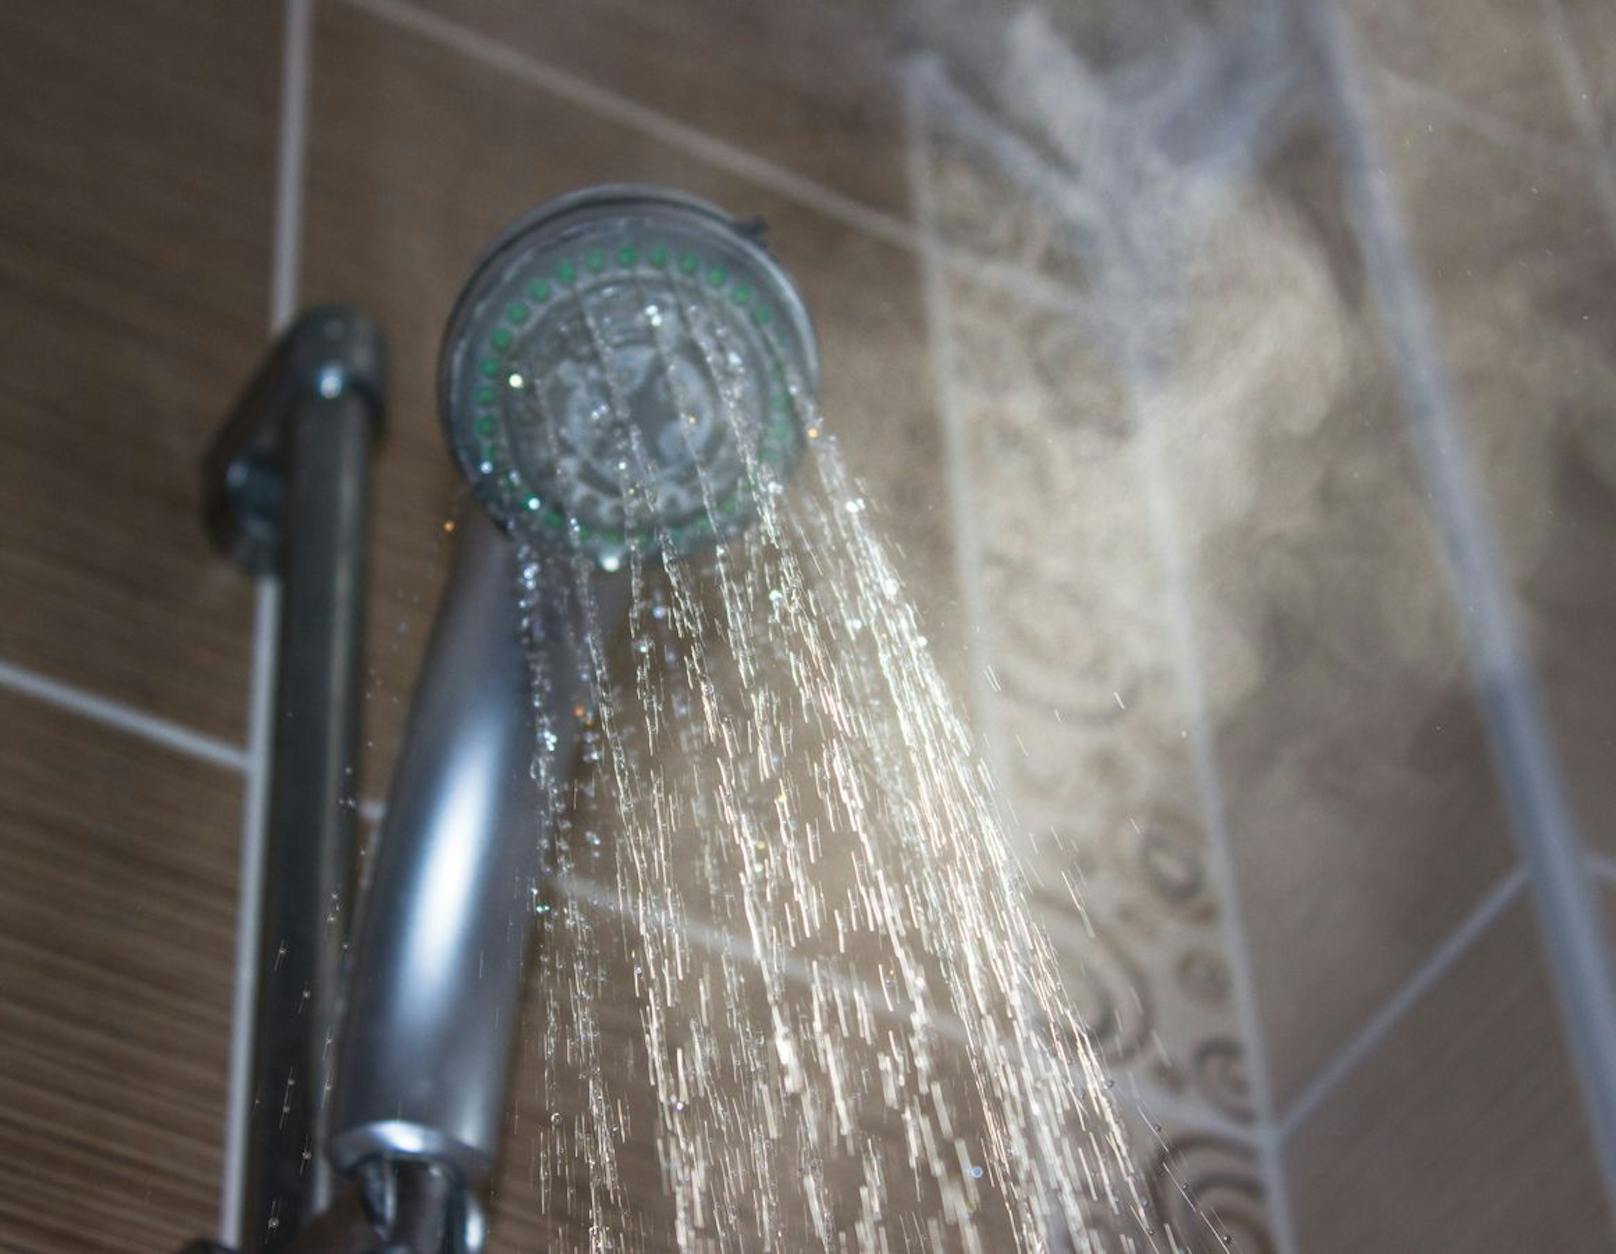 Beim duschen solltest du nicht zu viel heißes Wasser oder Seife verwenden. Diese schädigen deinen Hautschutzmantel und strapazieren deine Haut.